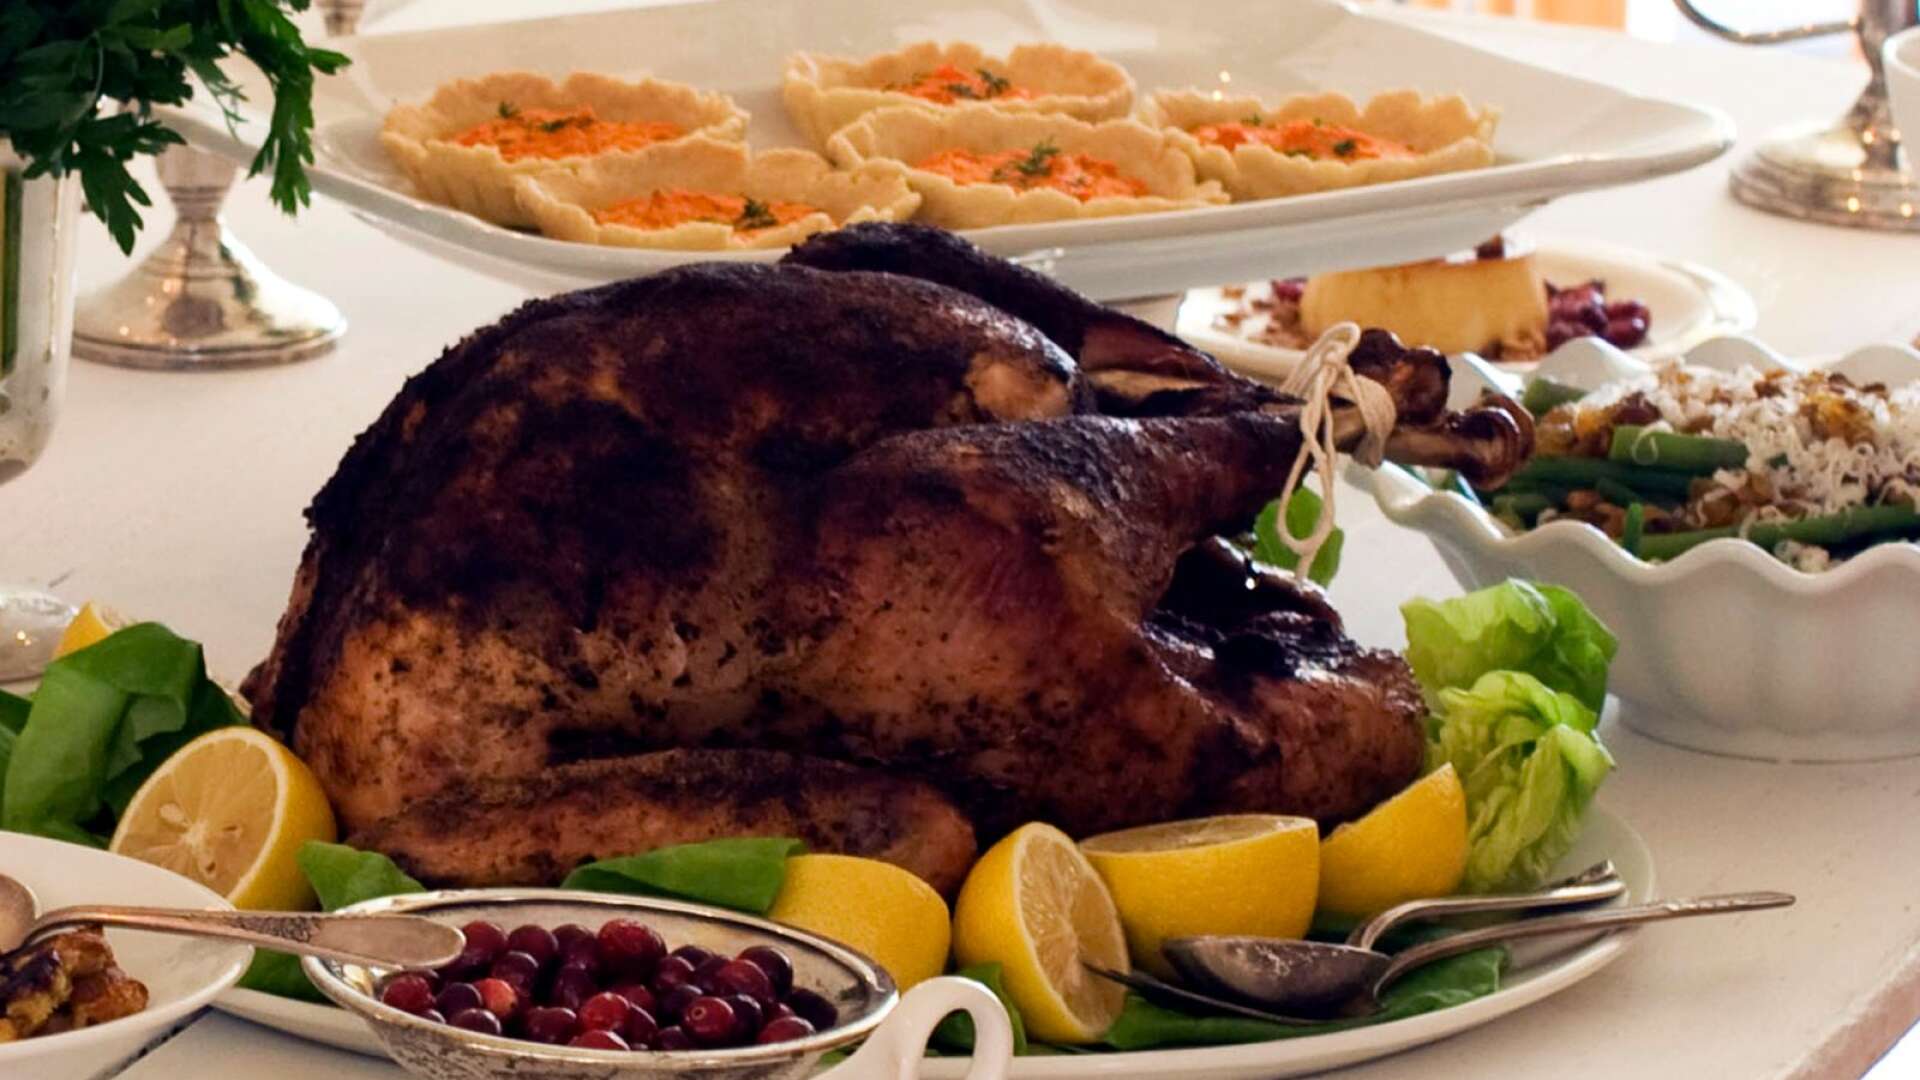 Det vore mycket bättre om vi istället importerade själva Thanksgiving. Då samlas amerikanerna i sina familjer för att fira allt de har att vara tacksamma för, skriver Charlotta Levay.